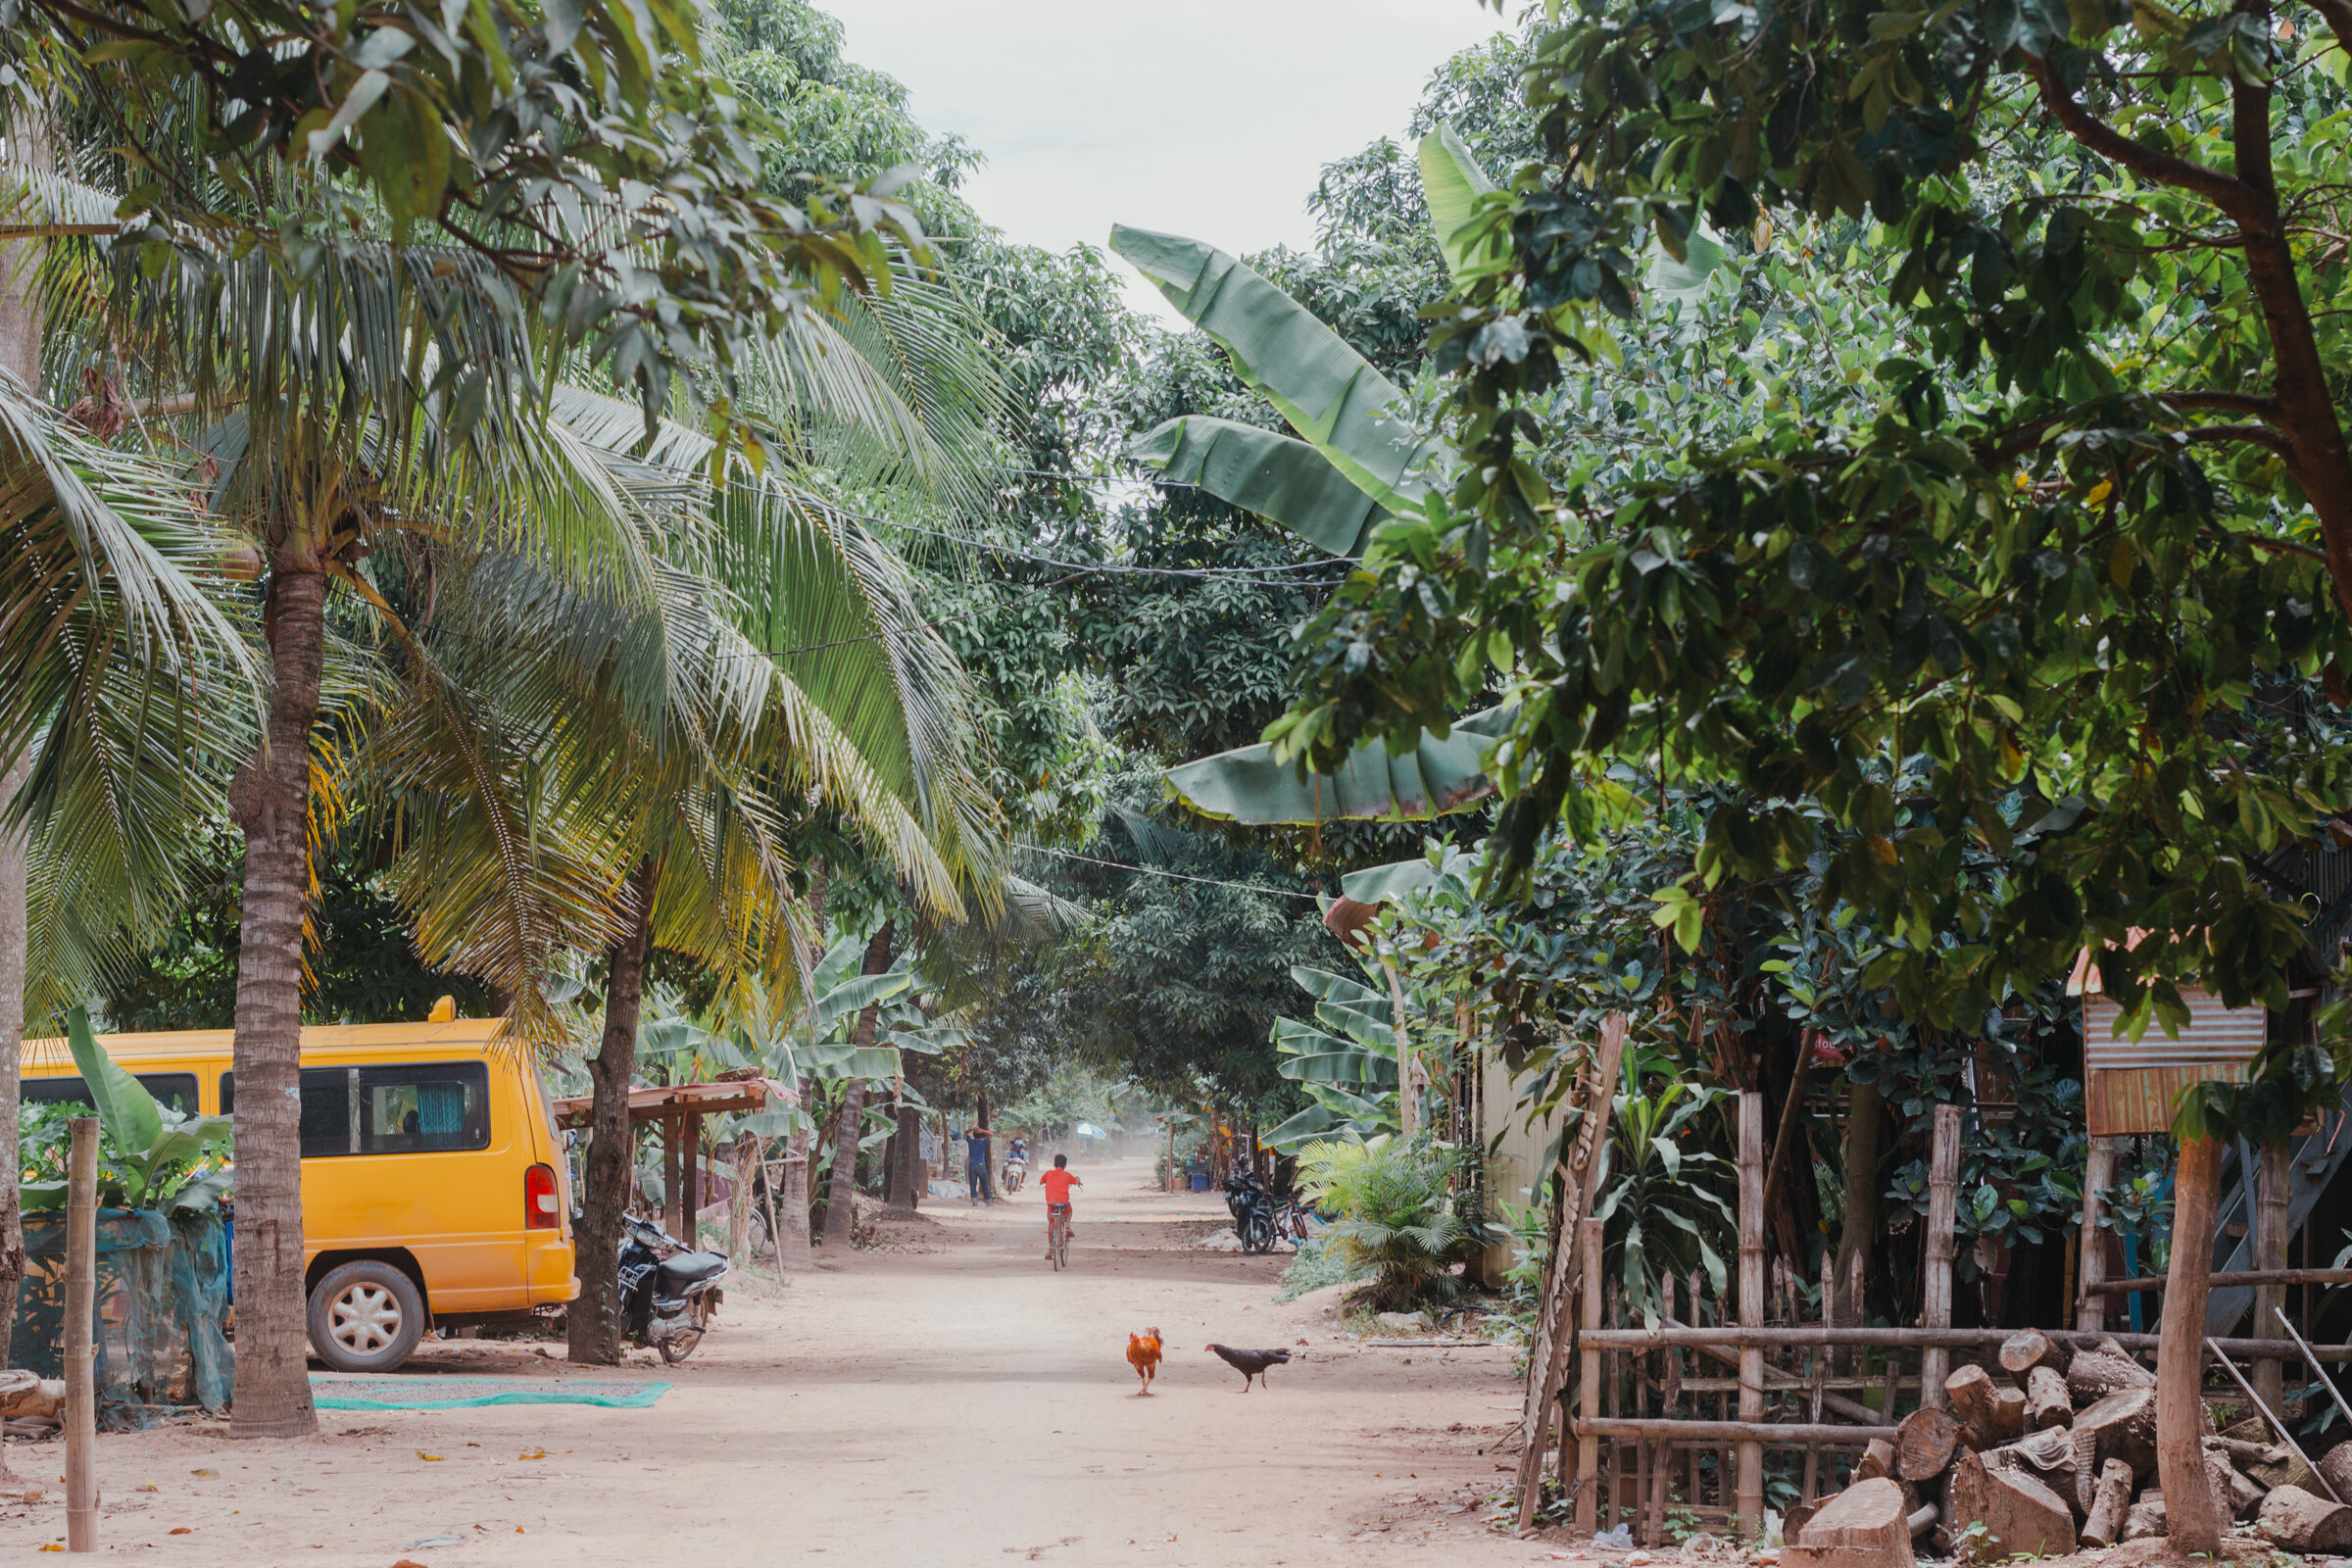 A village in Cambodia